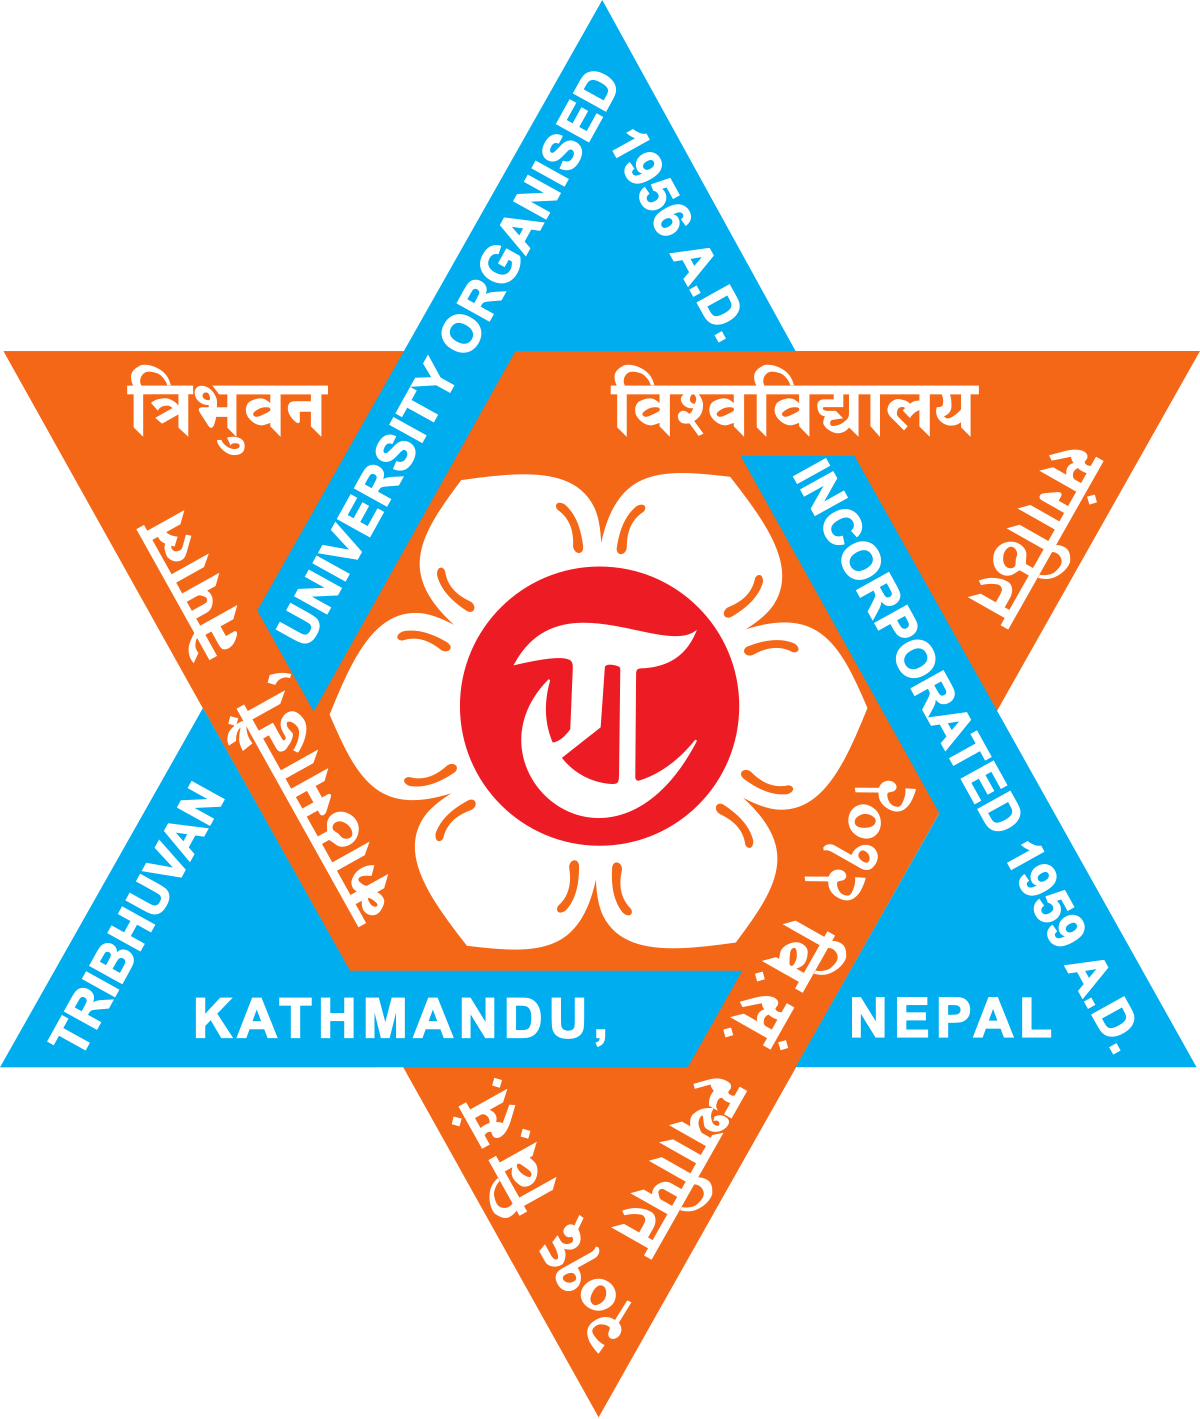 TU Logo